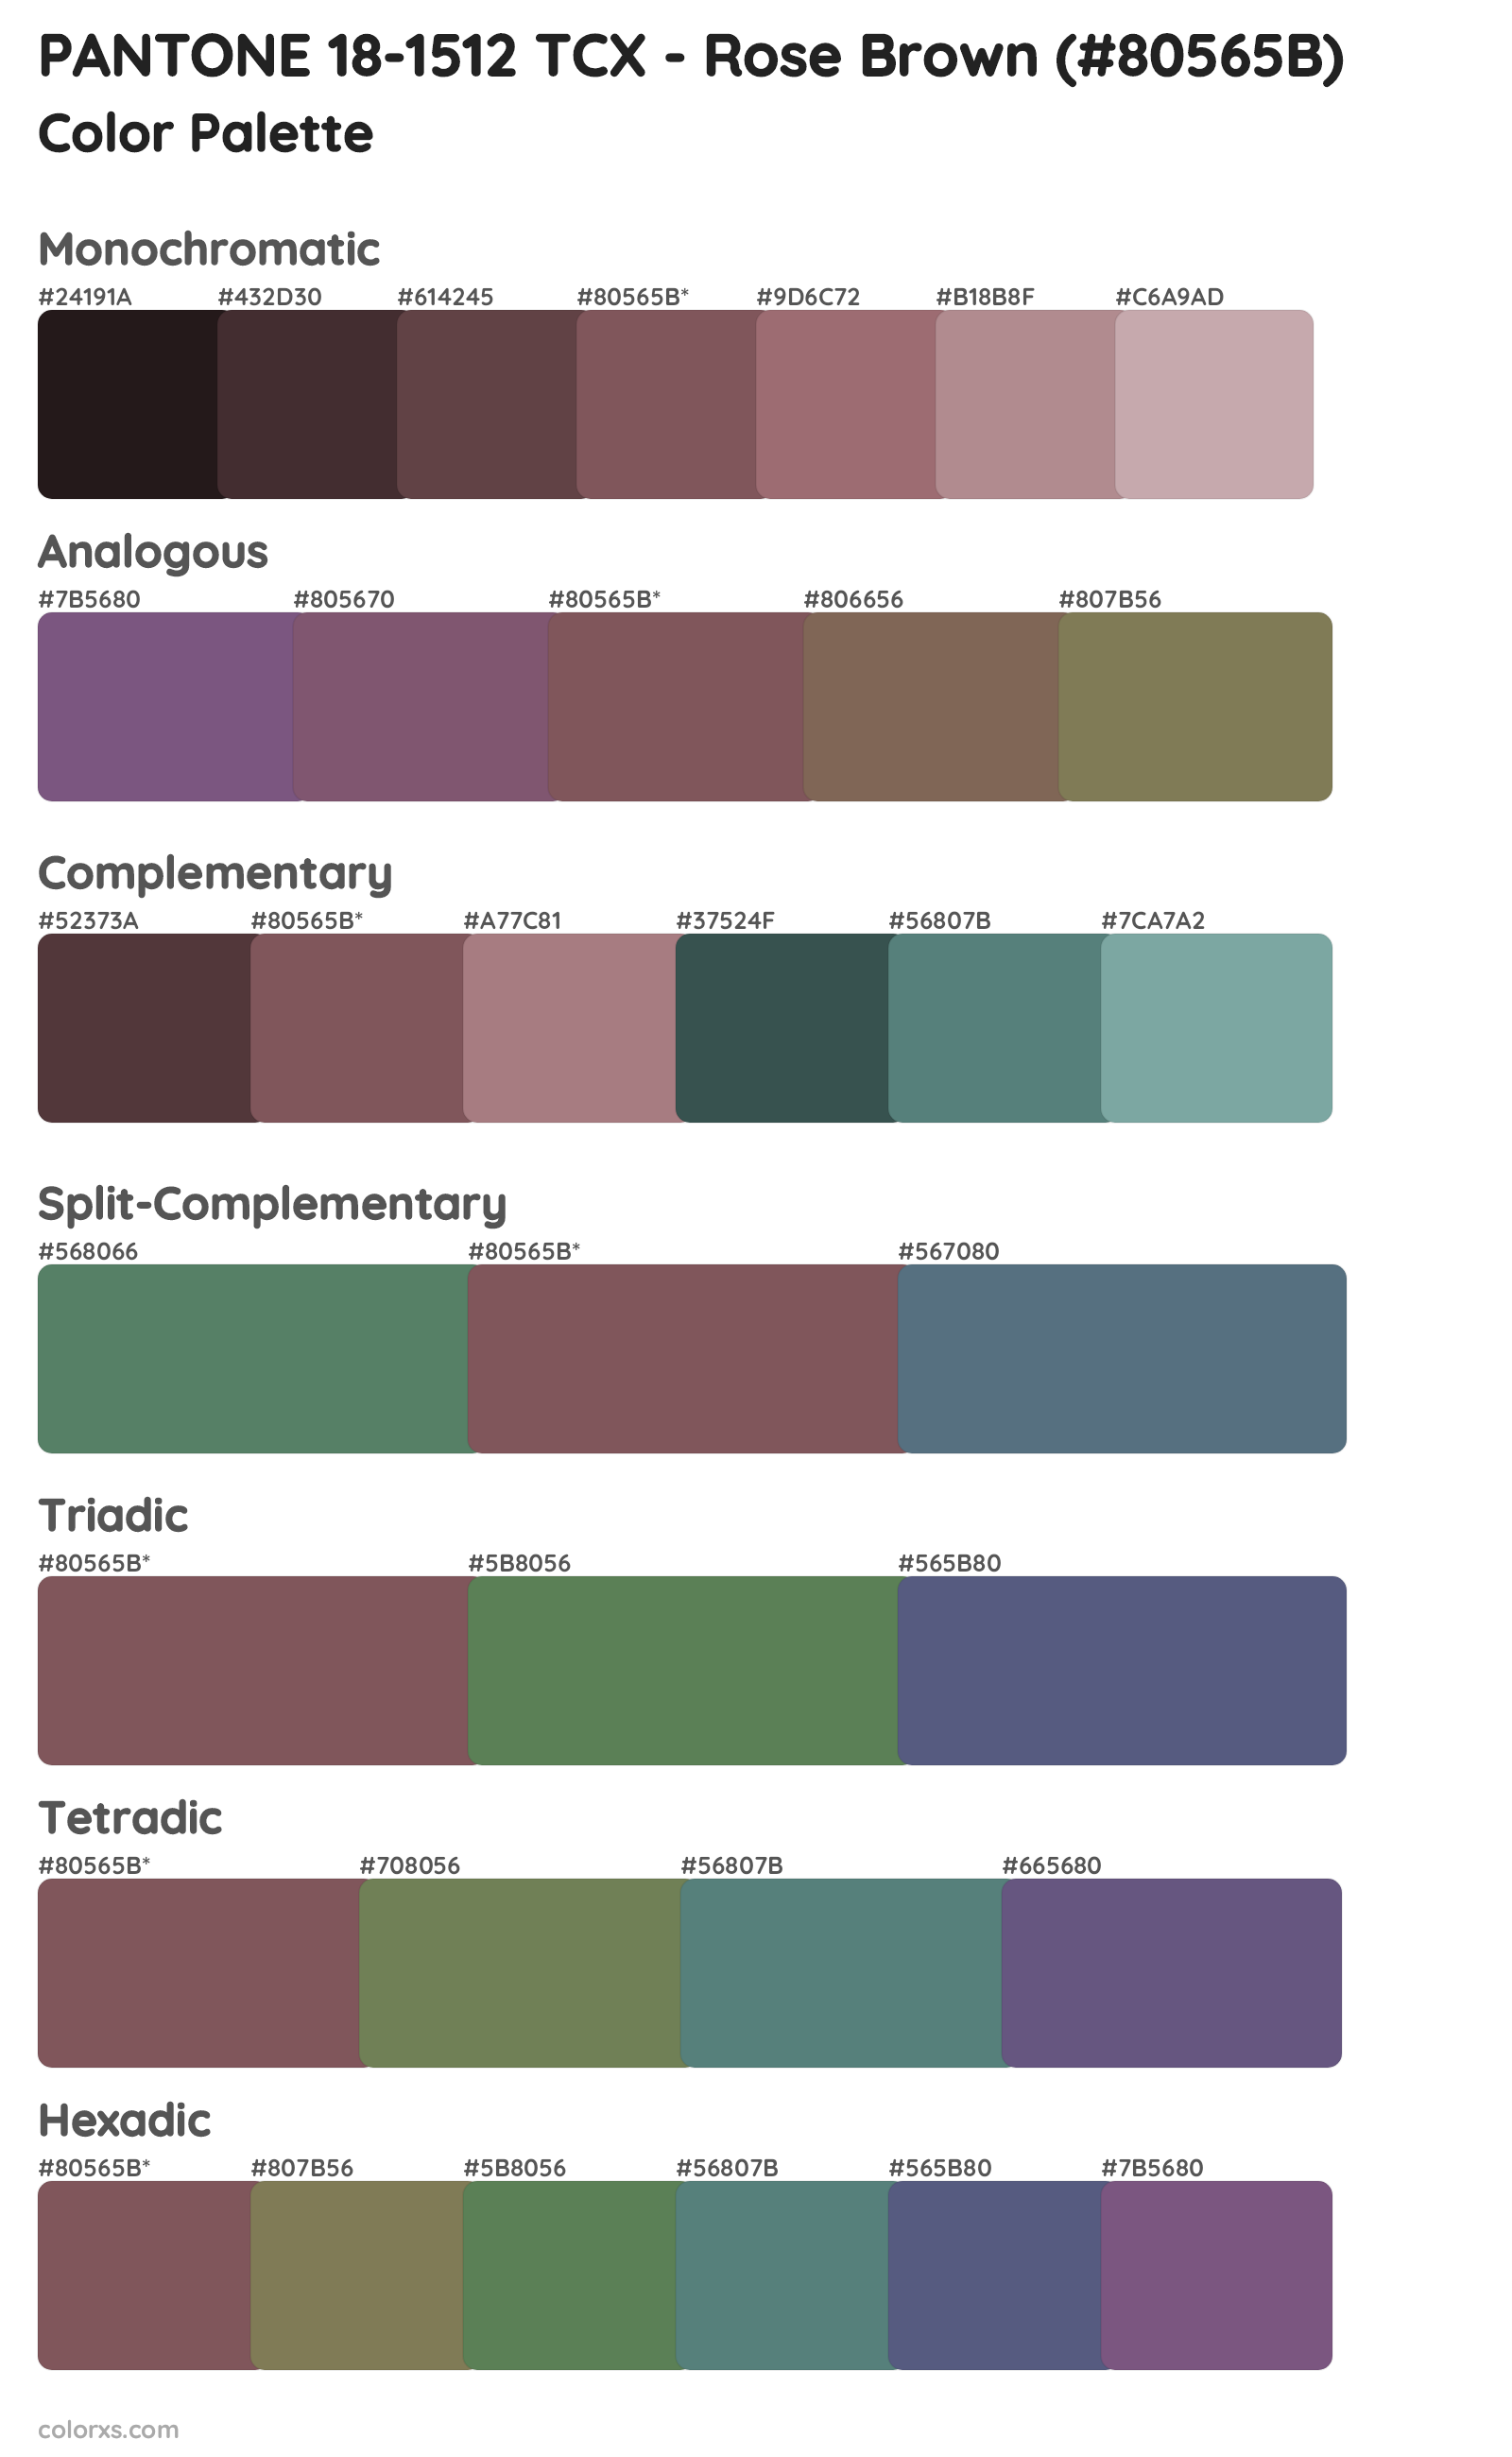 PANTONE 18-1512 TCX - Rose Brown Color Scheme Palettes